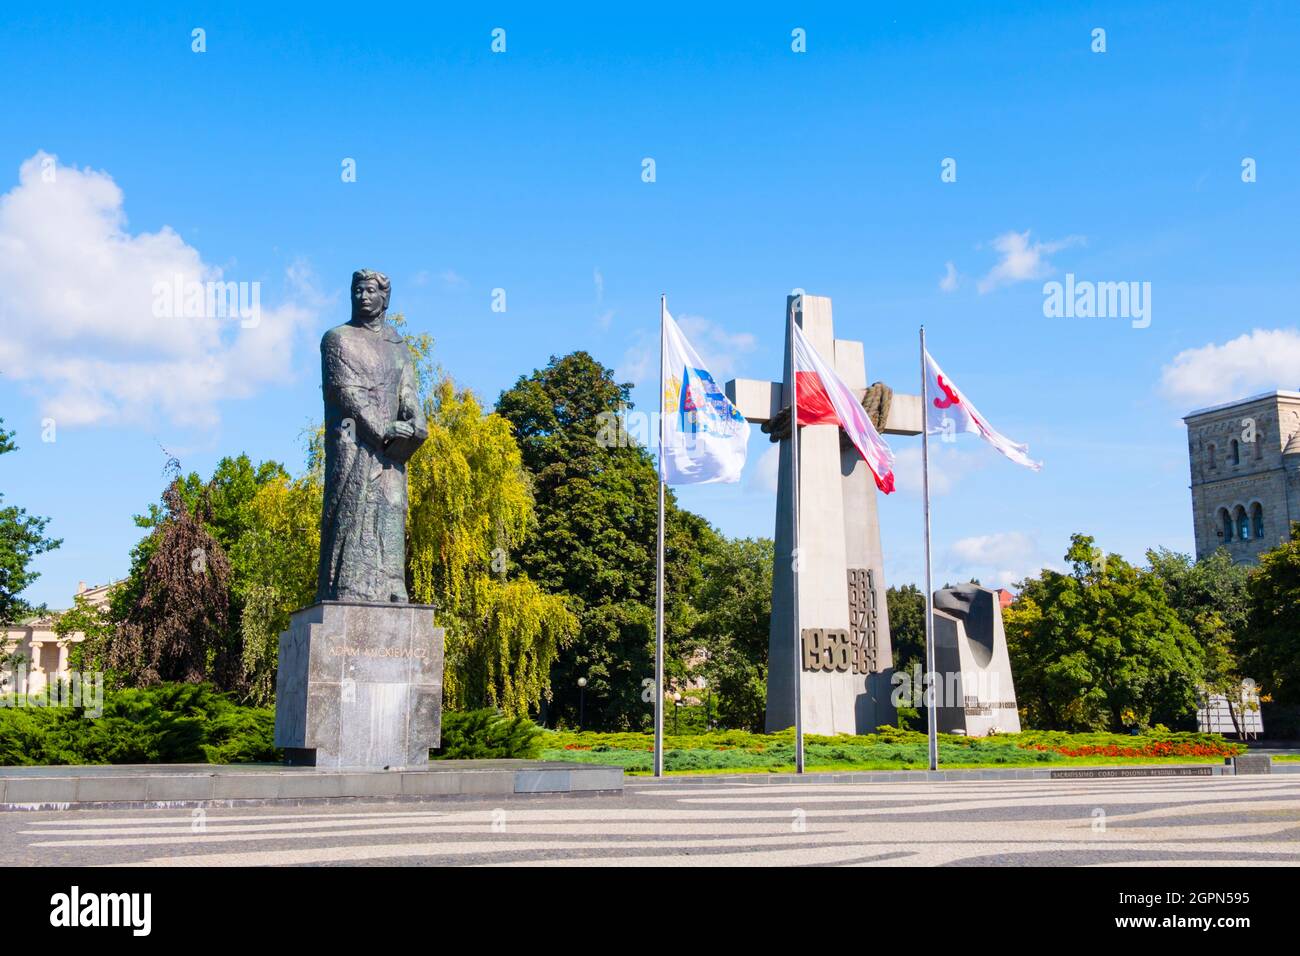 Plac Adama Mickiewicza, Adam Mickiewicz Square, Poznan, Poland Stock Photo